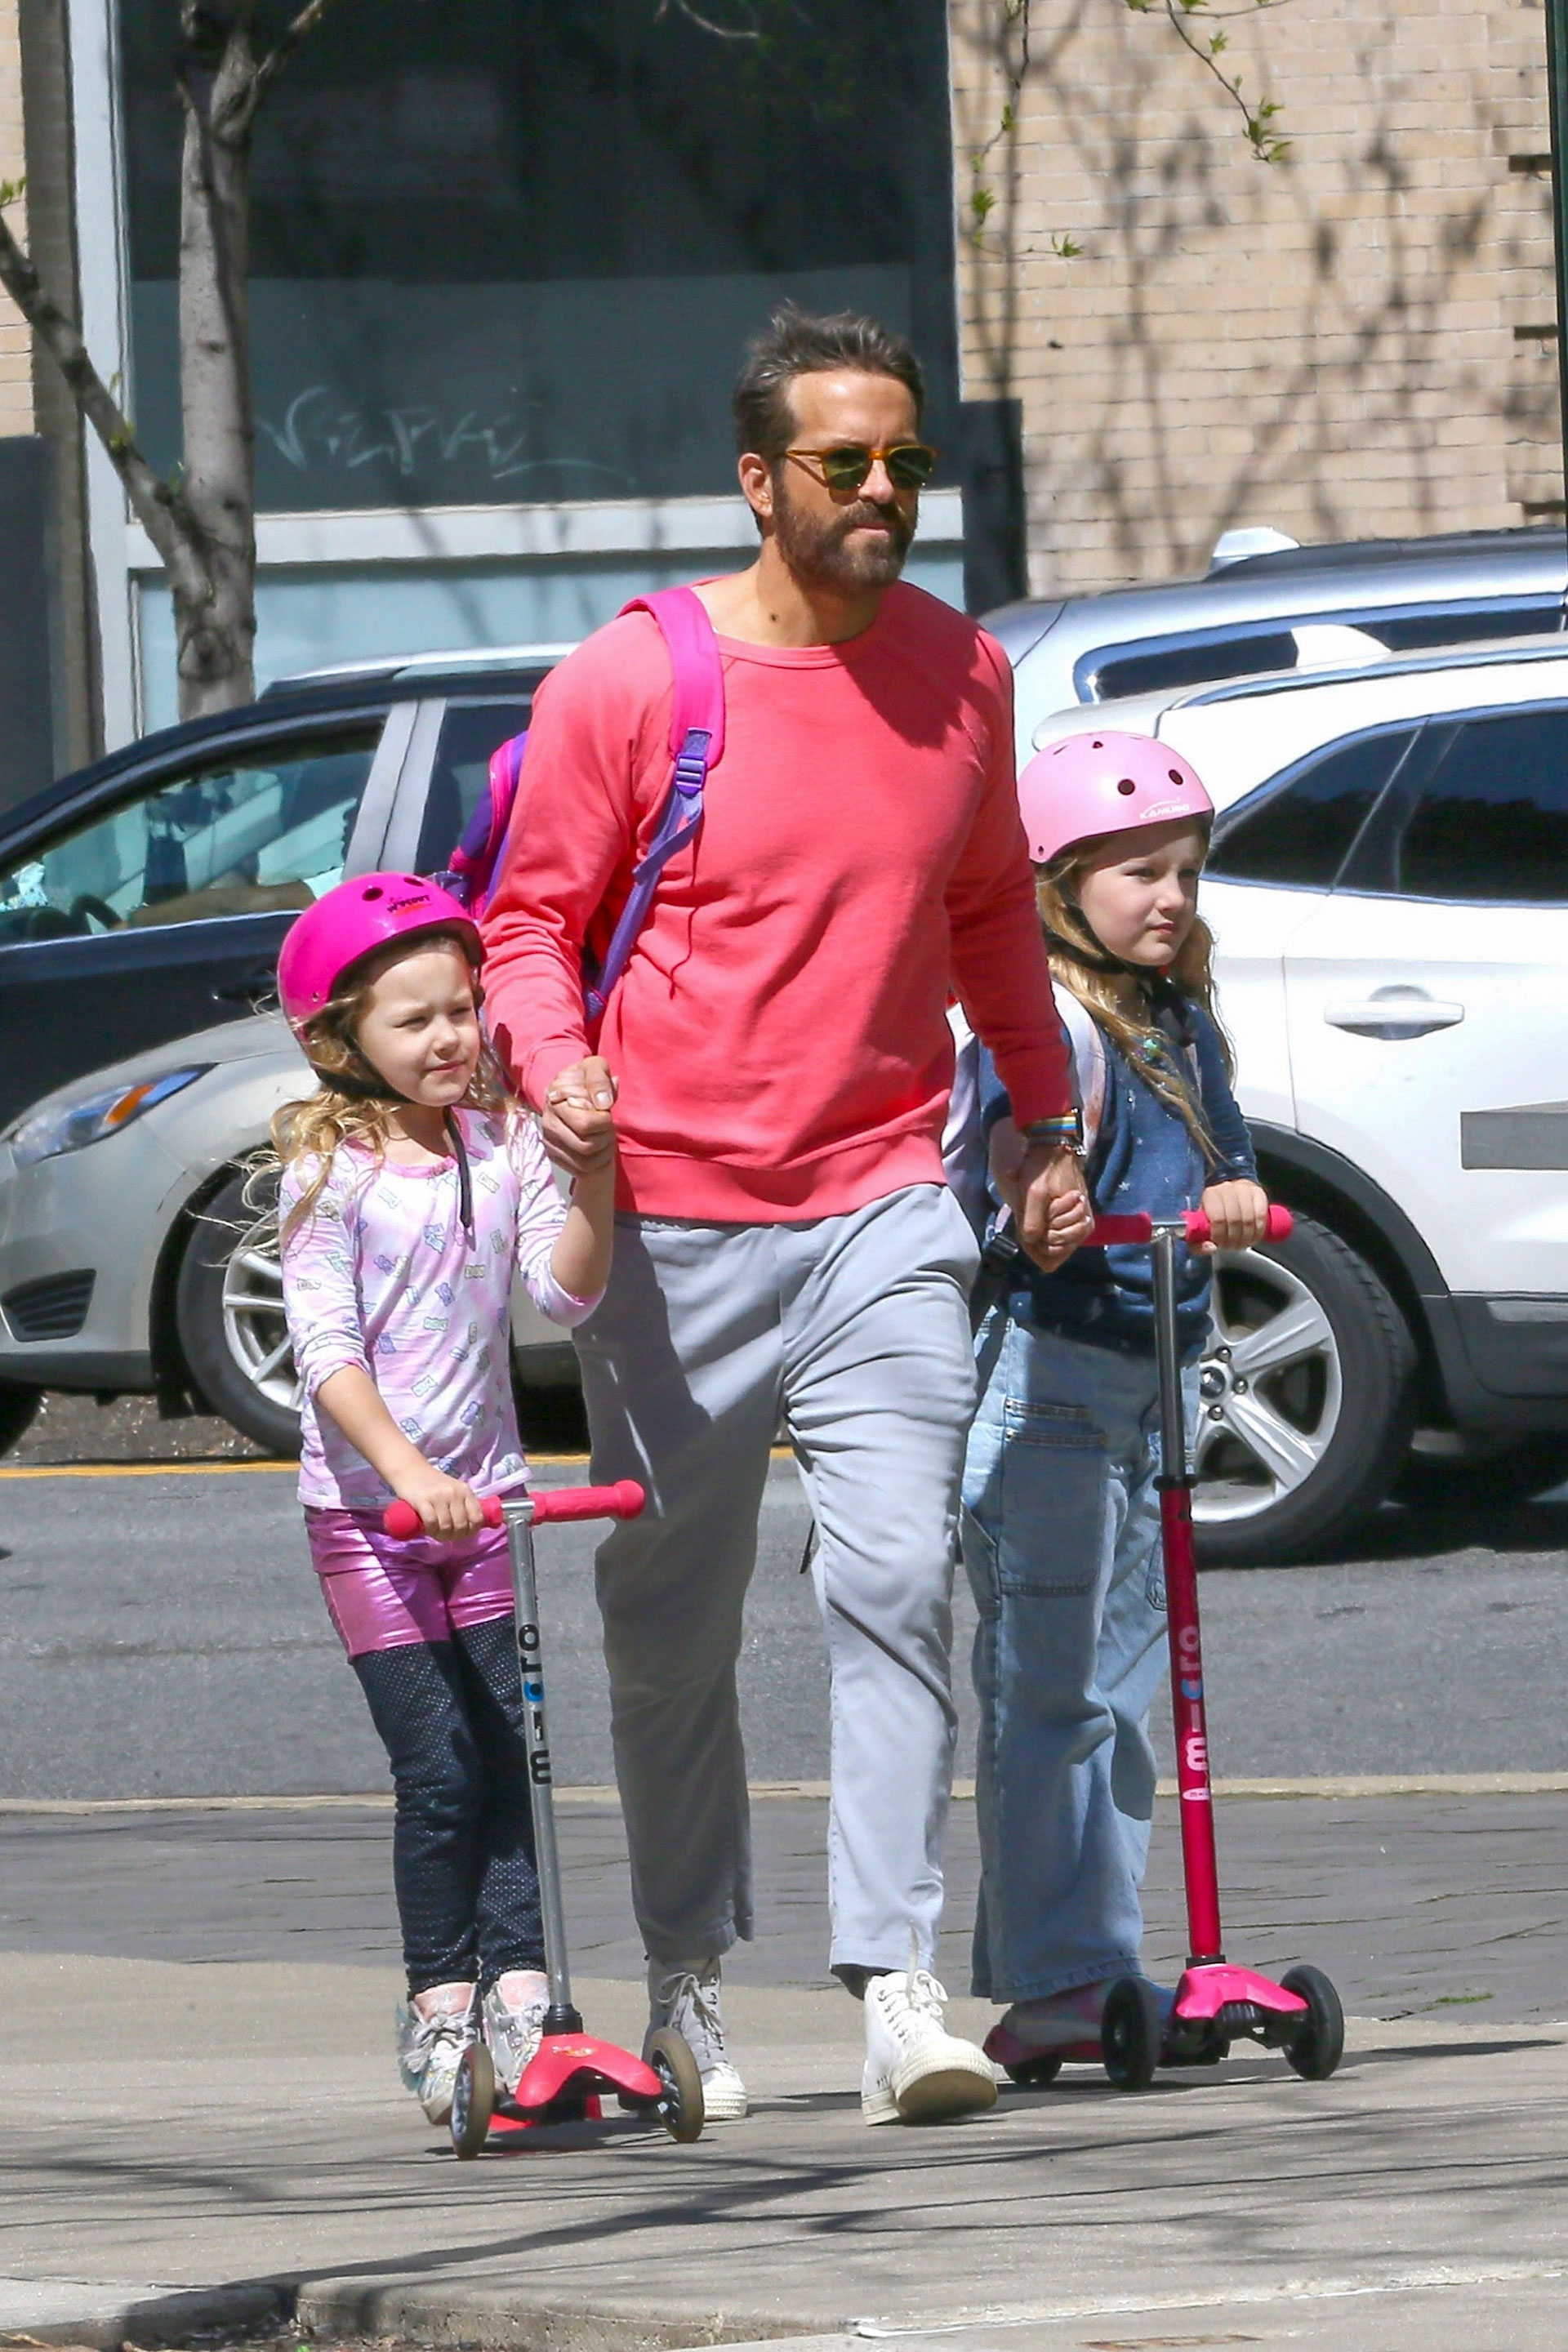 Un paseo distinto. Ryan Reynolds y sus hijas salieron a dar una vuelta por las calles de su vecindario en Tribeca, Nueva York. Las niñas fueron en sus monopatines y el actor estuvo atento a cada una de ellas. Por caso, las tomó de la mano para estar seguro de que no se tropezaran